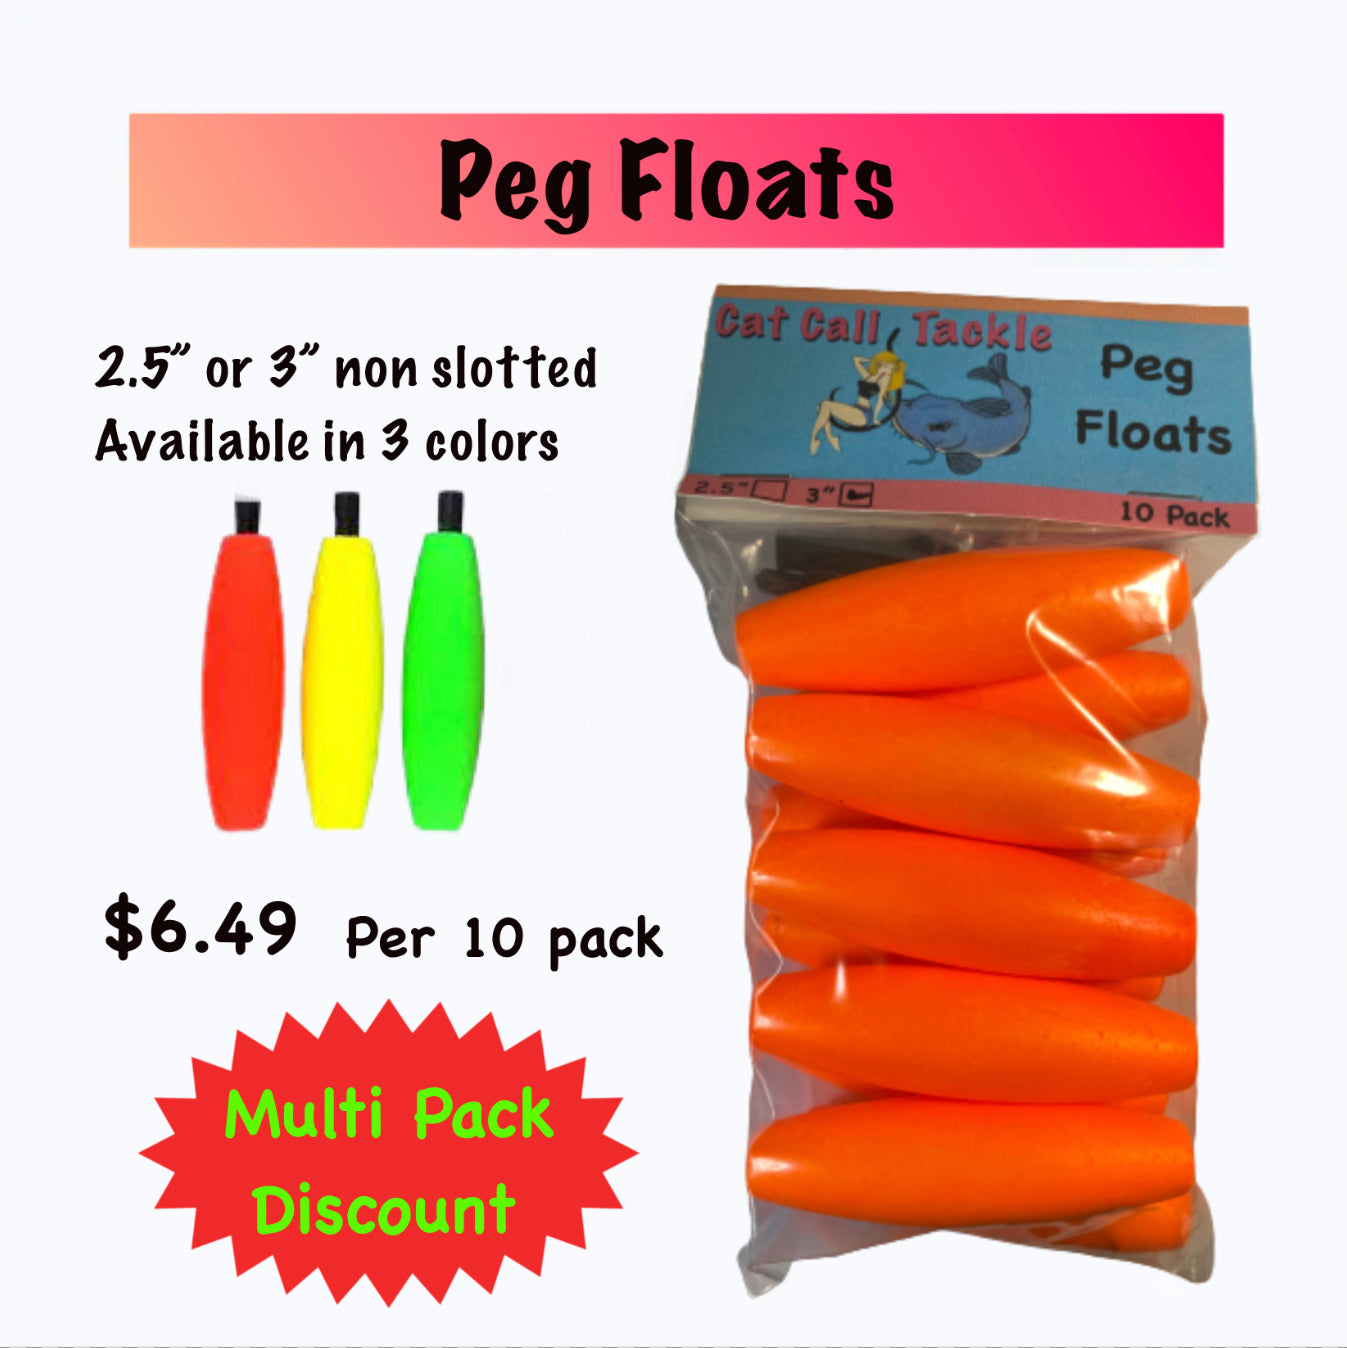 Peg Floats